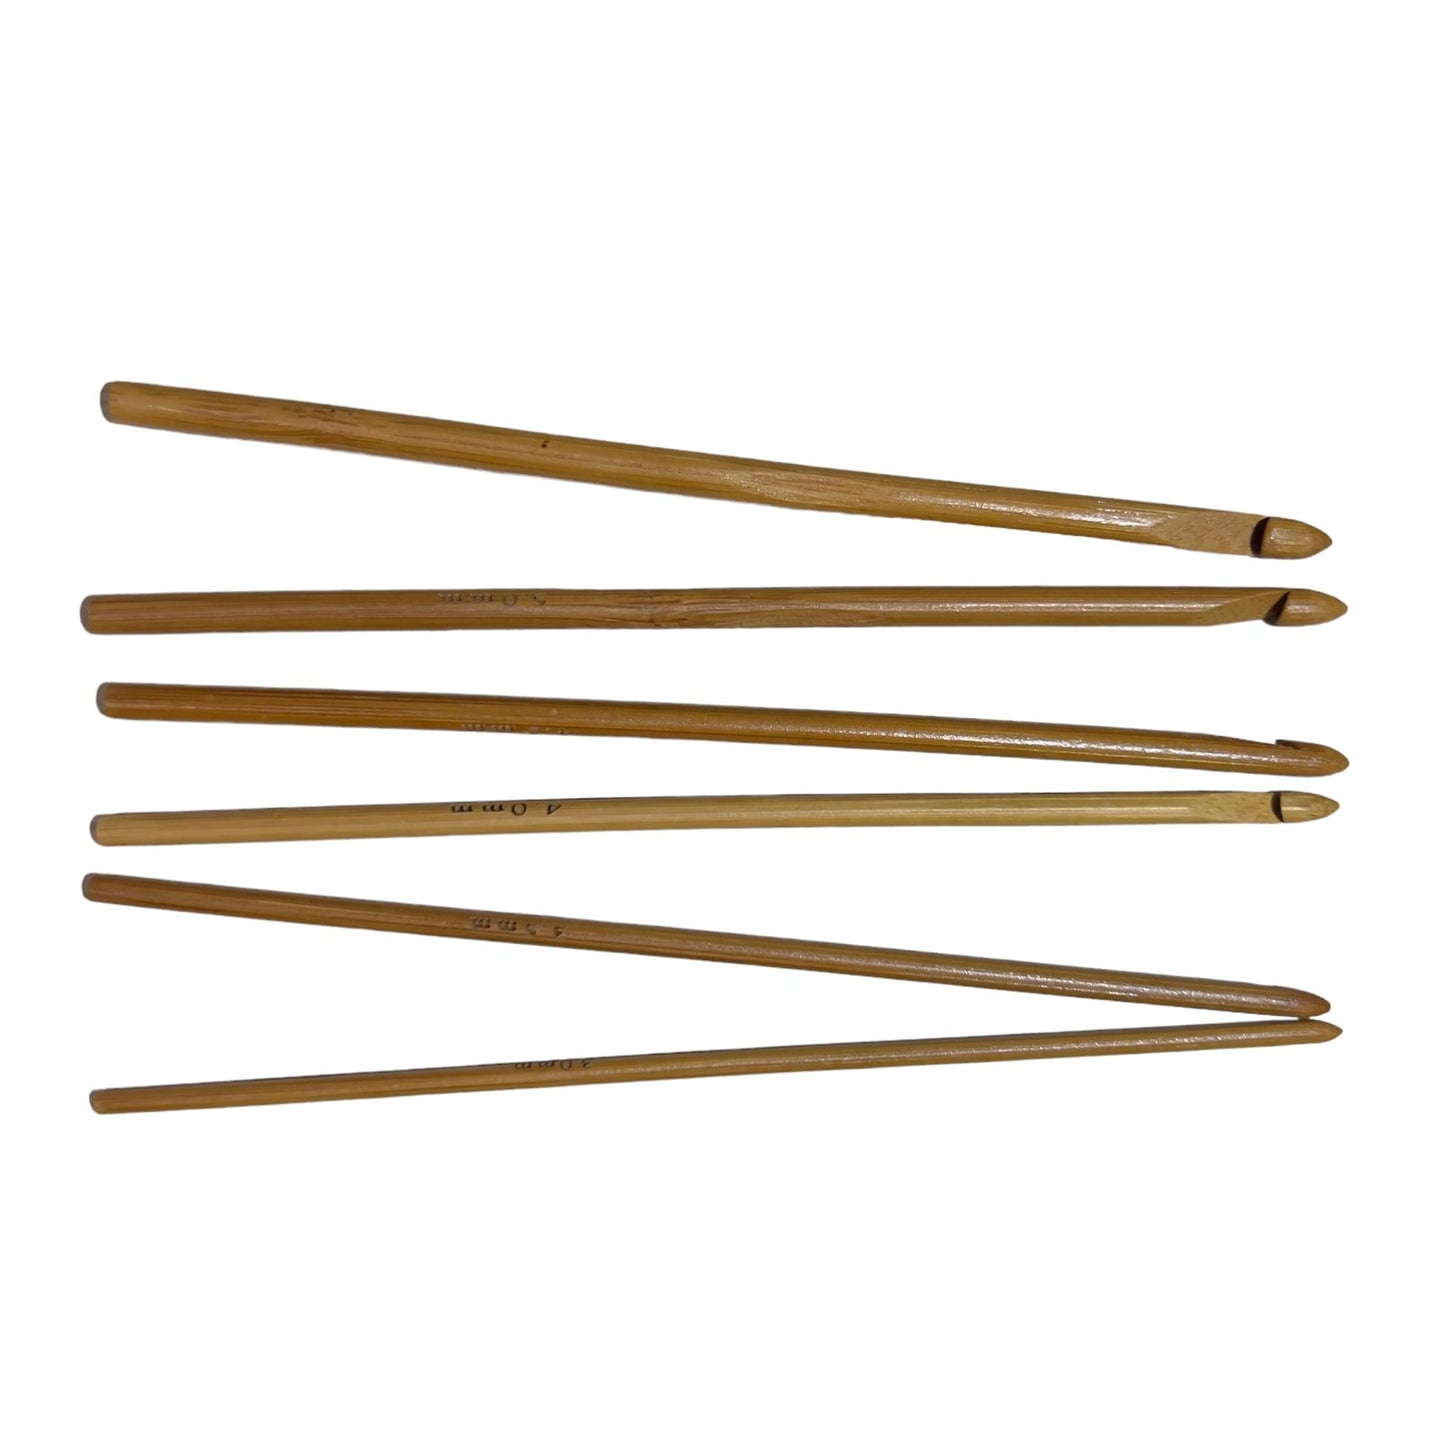 Ganchos de bambú #3 al #25